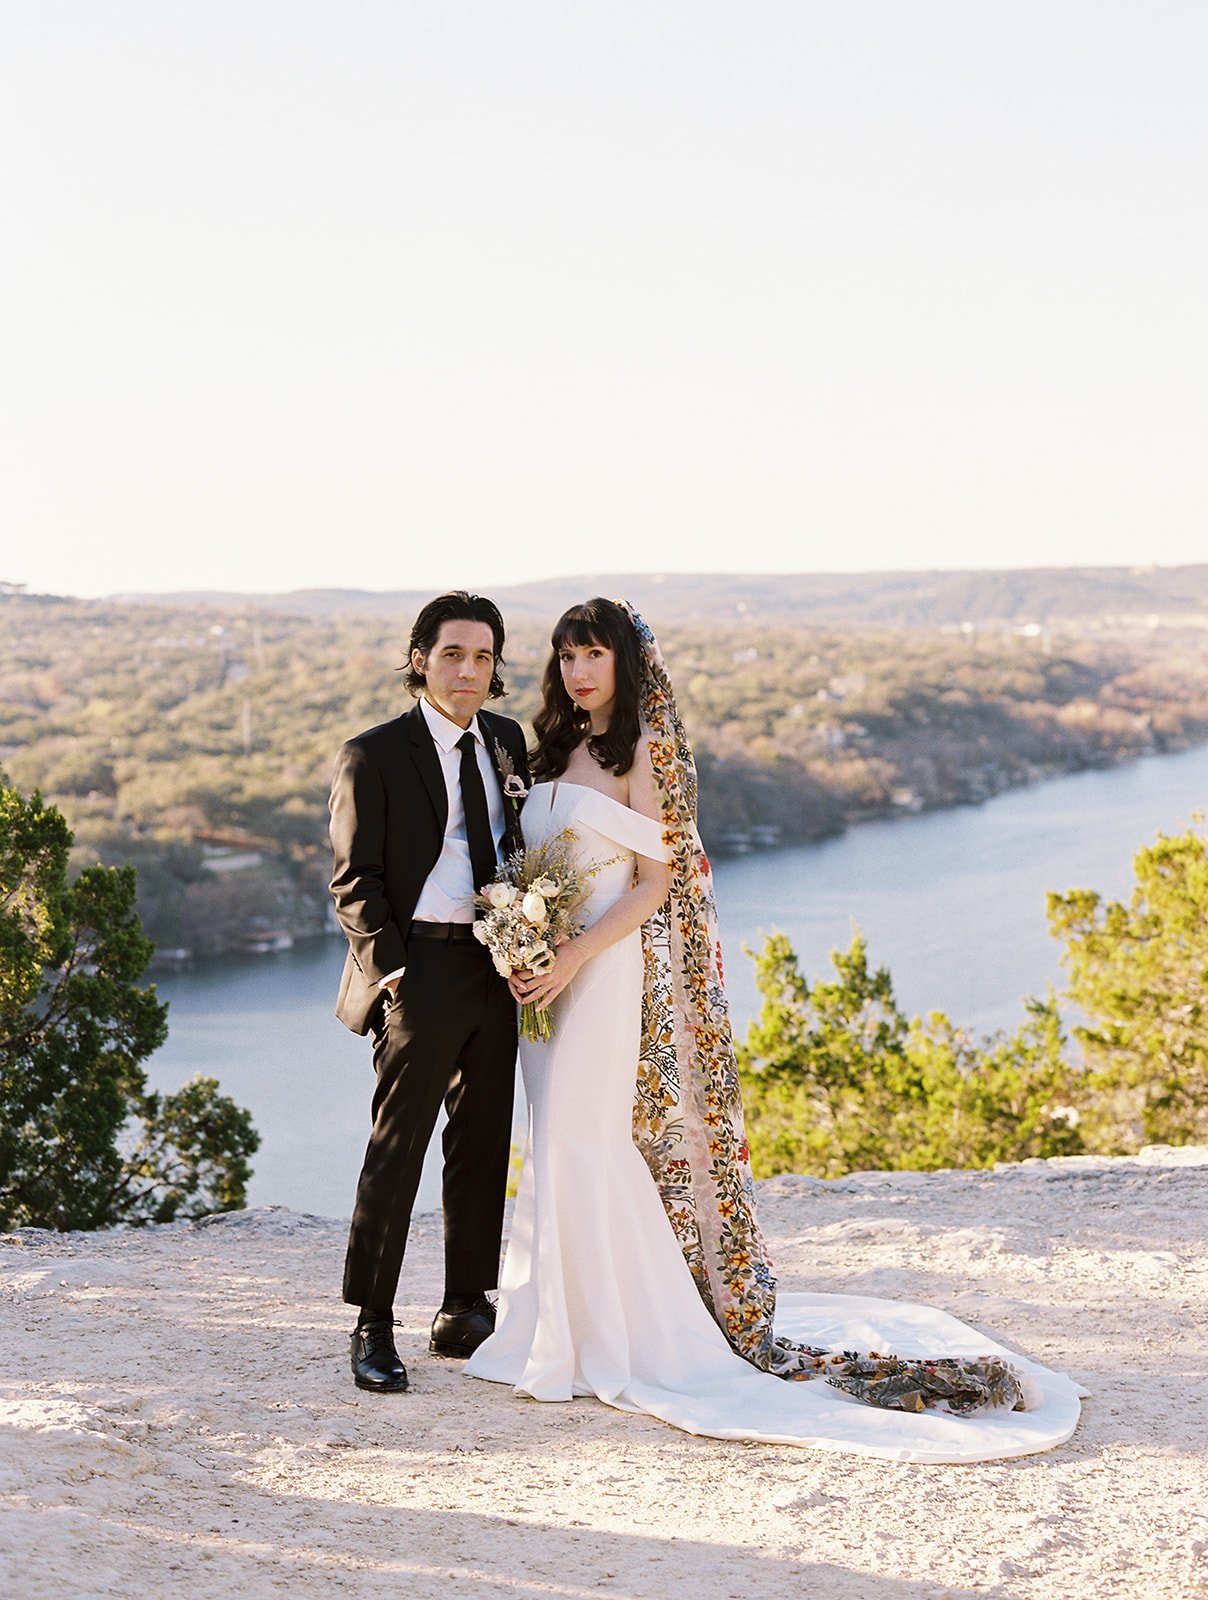 Best-Austin-Wedding-Photographers-Elopement-Film-35mm-Asheville-Santa-Barbara-Laguna-Gloria-21.jpg